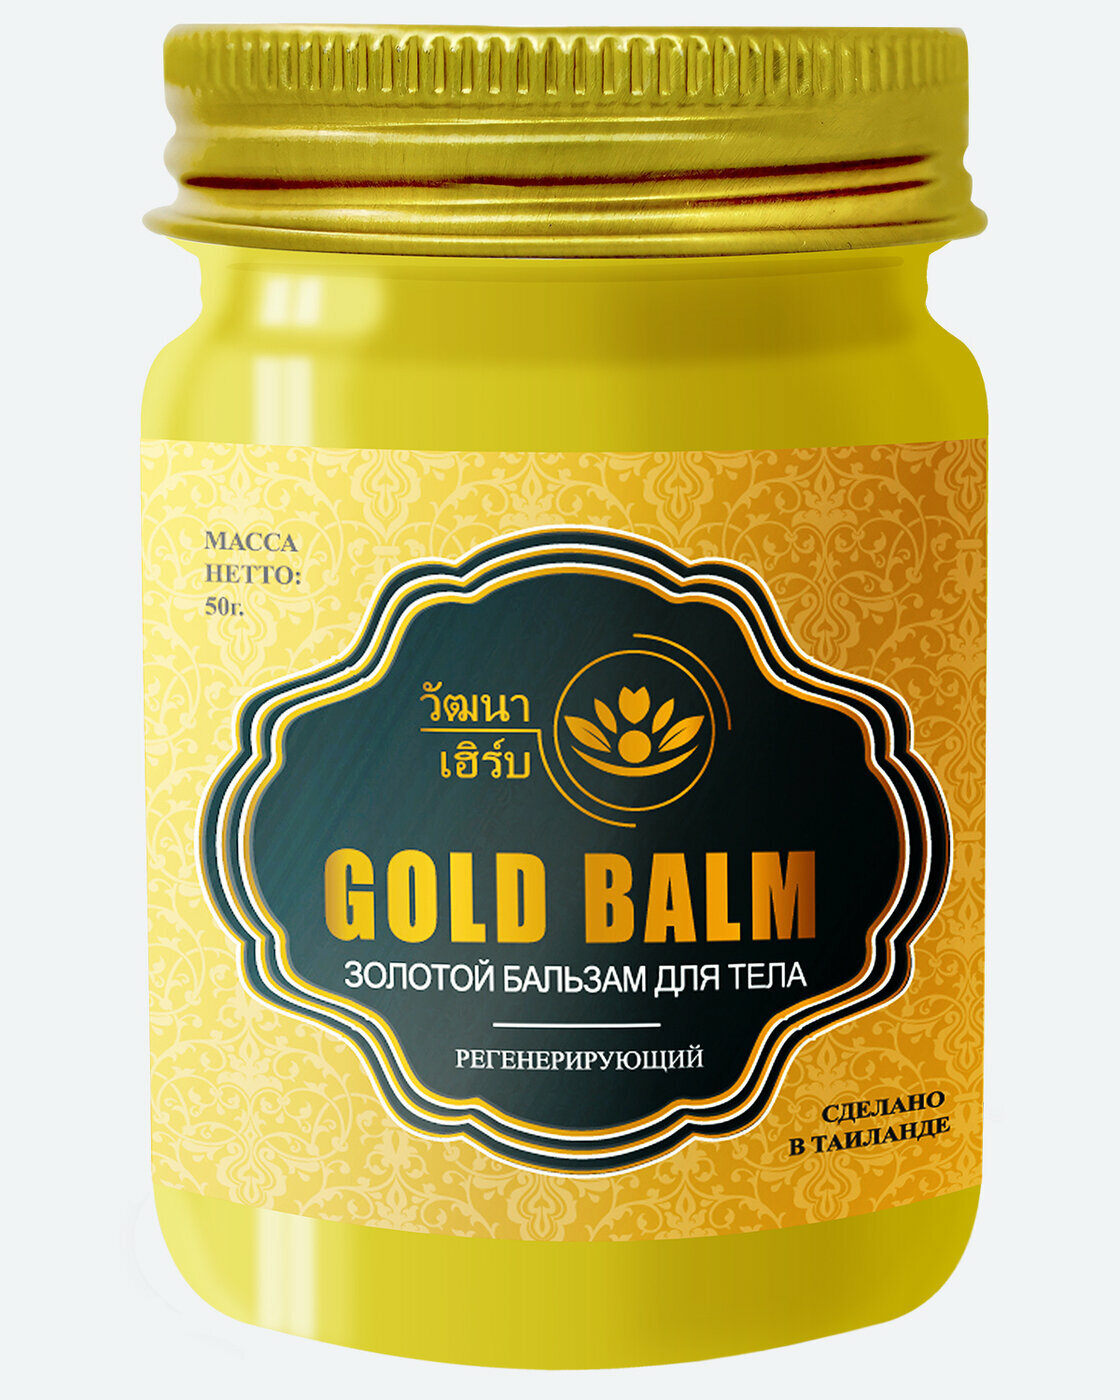 Тайский Золотой бальзам для тела регенерирующий Wattana Herb, 50гр.